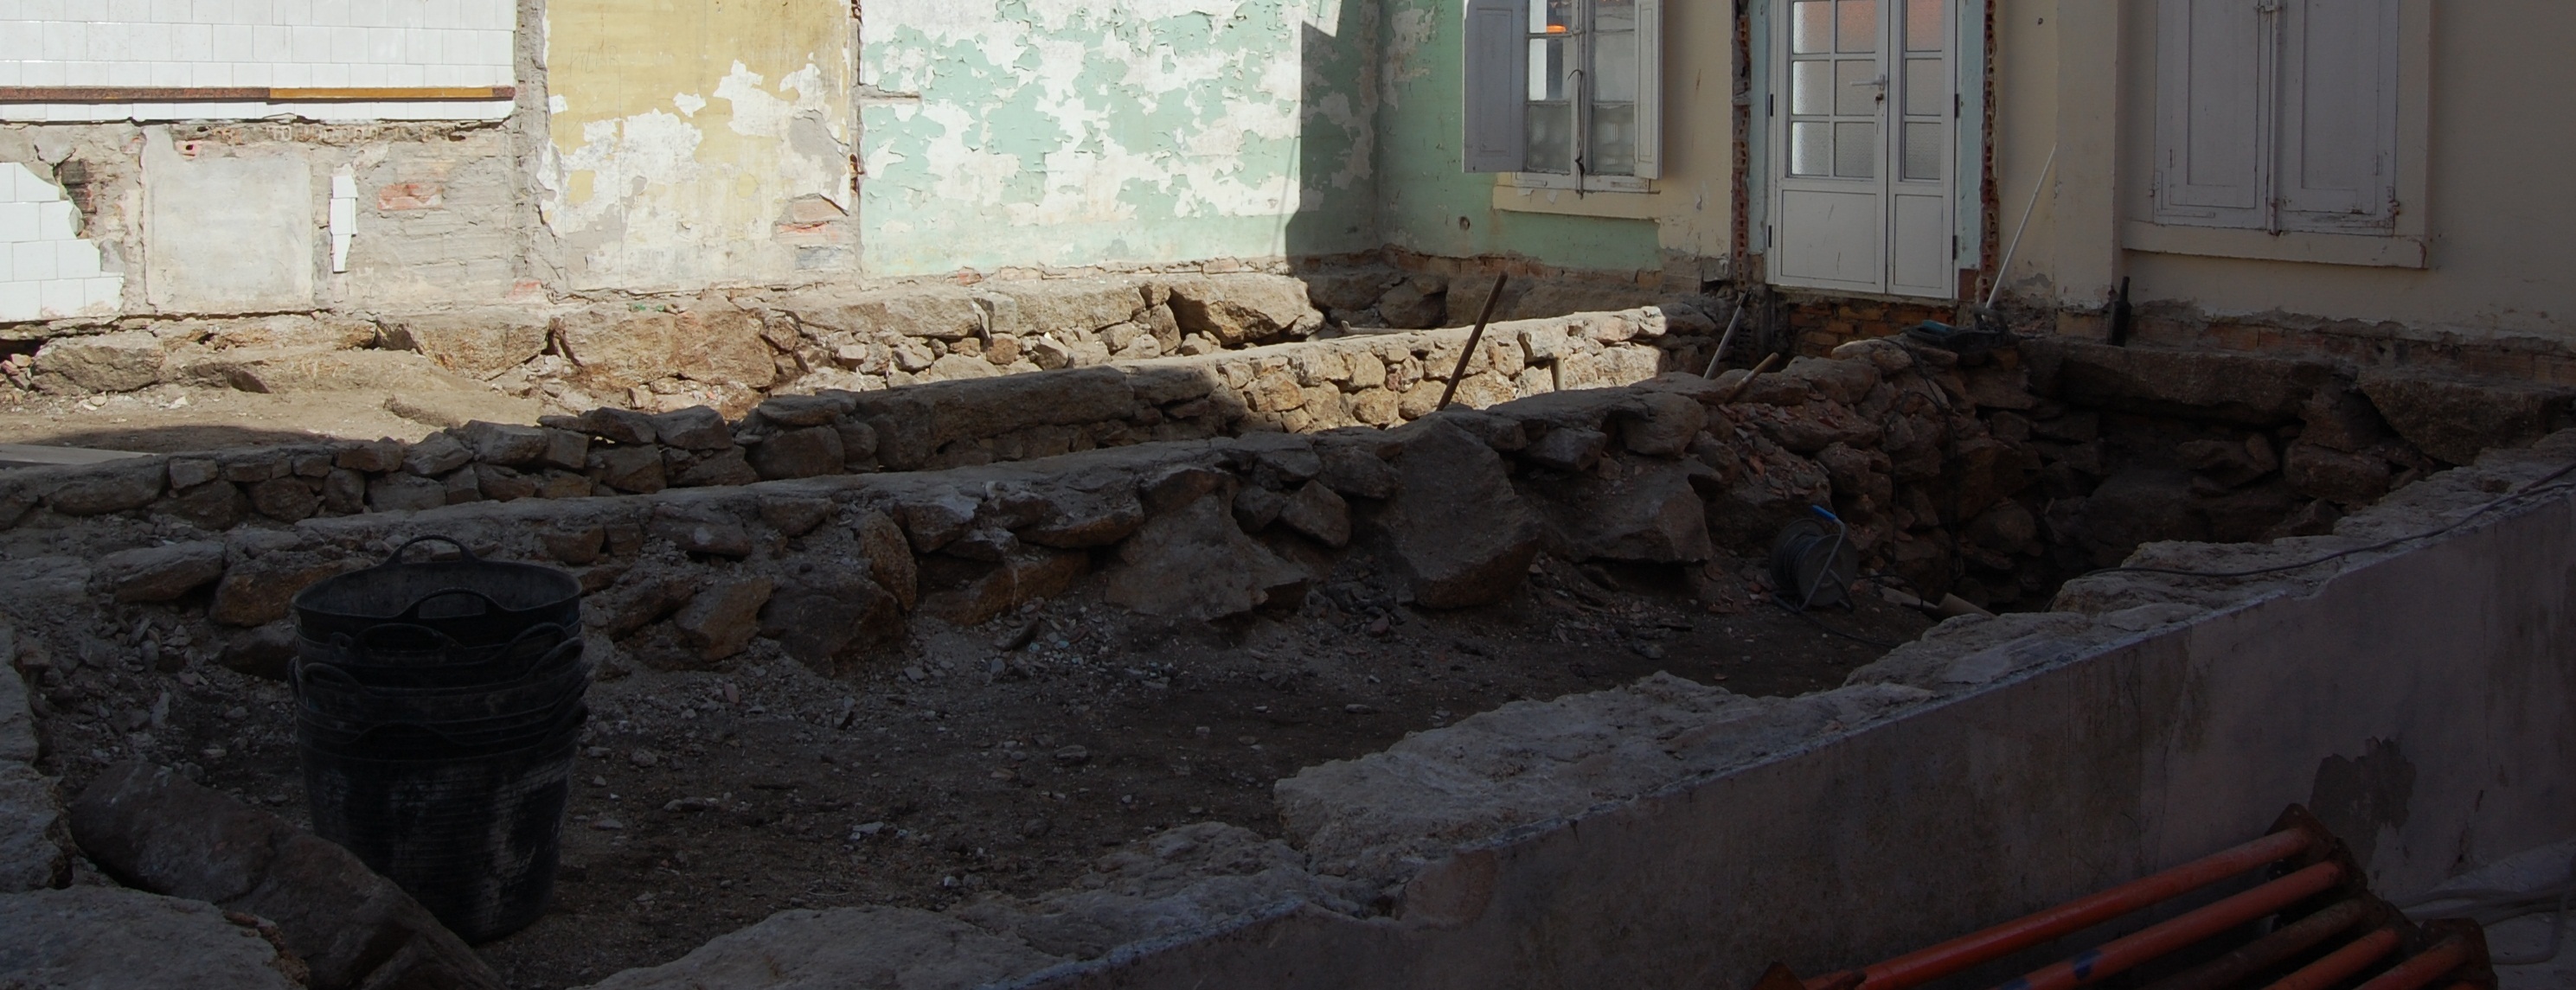 Foto donde se observa una antigua cimentación mediante muros de piedra.